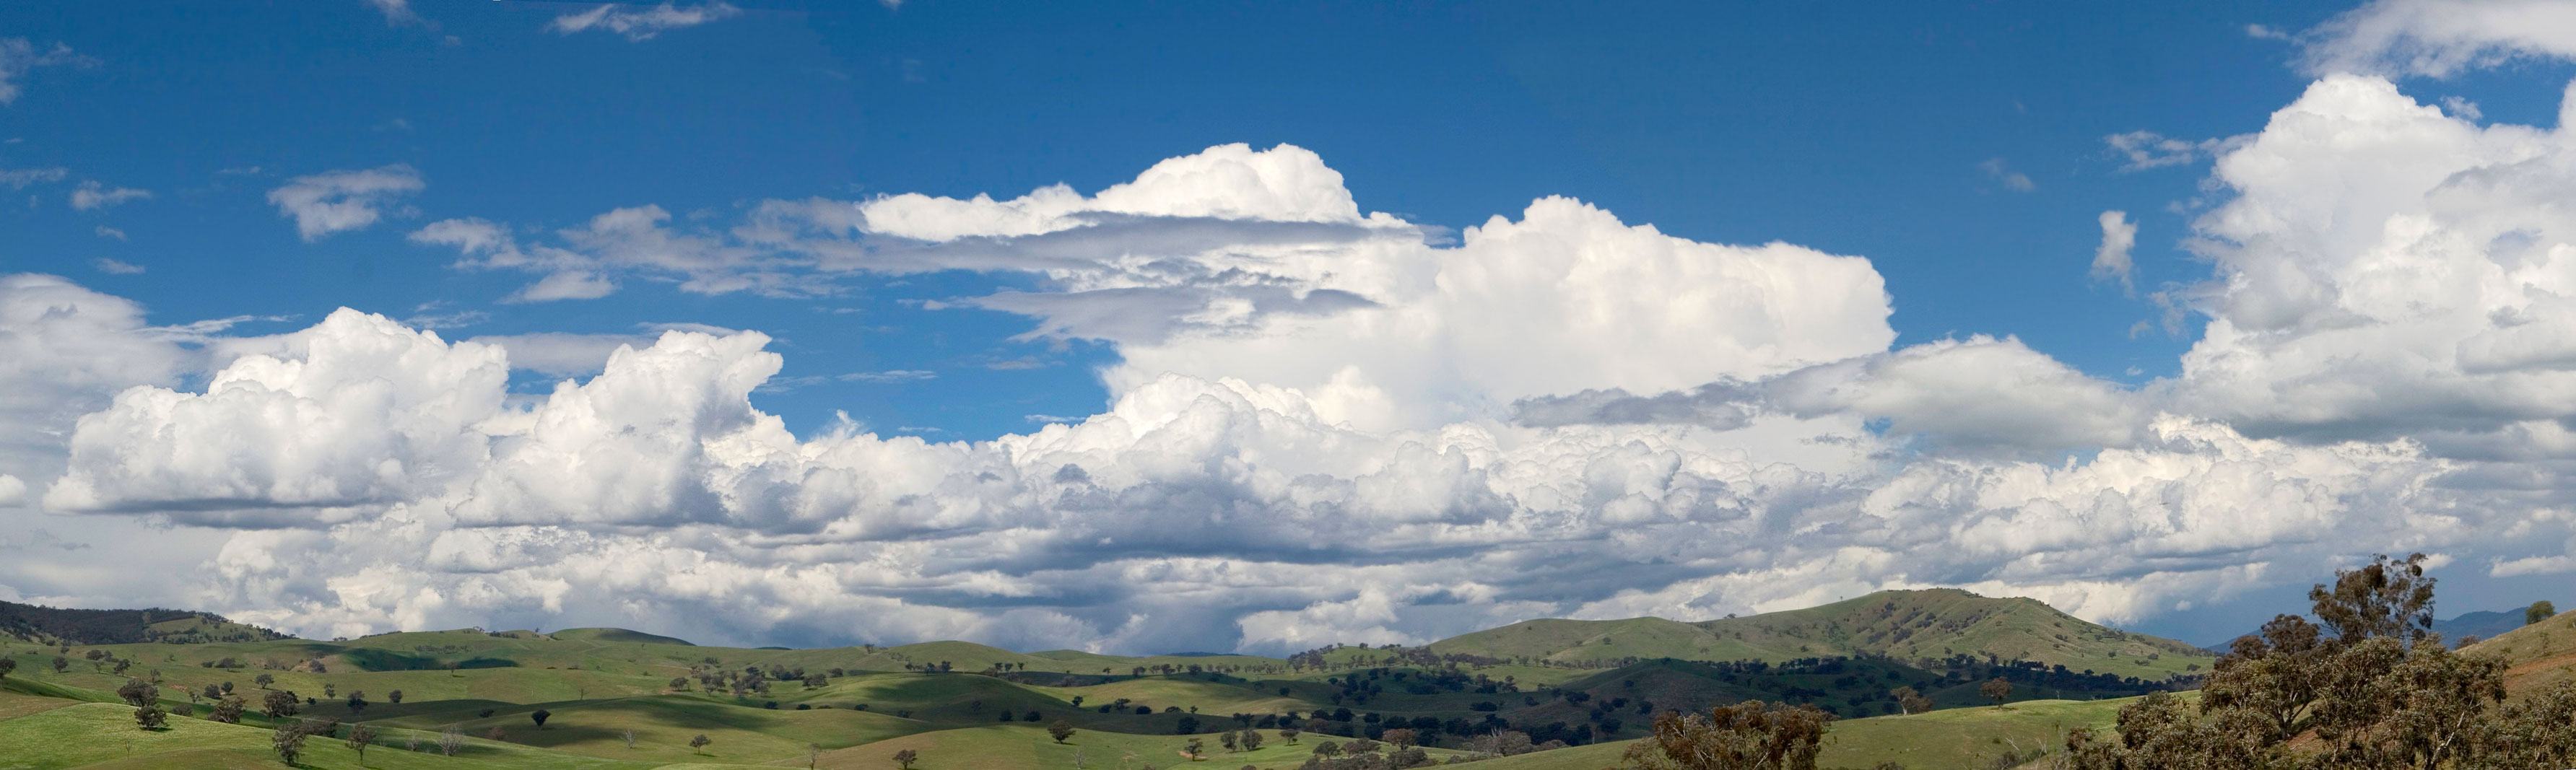 Hình ảnh đám mây trên thảo nguyên